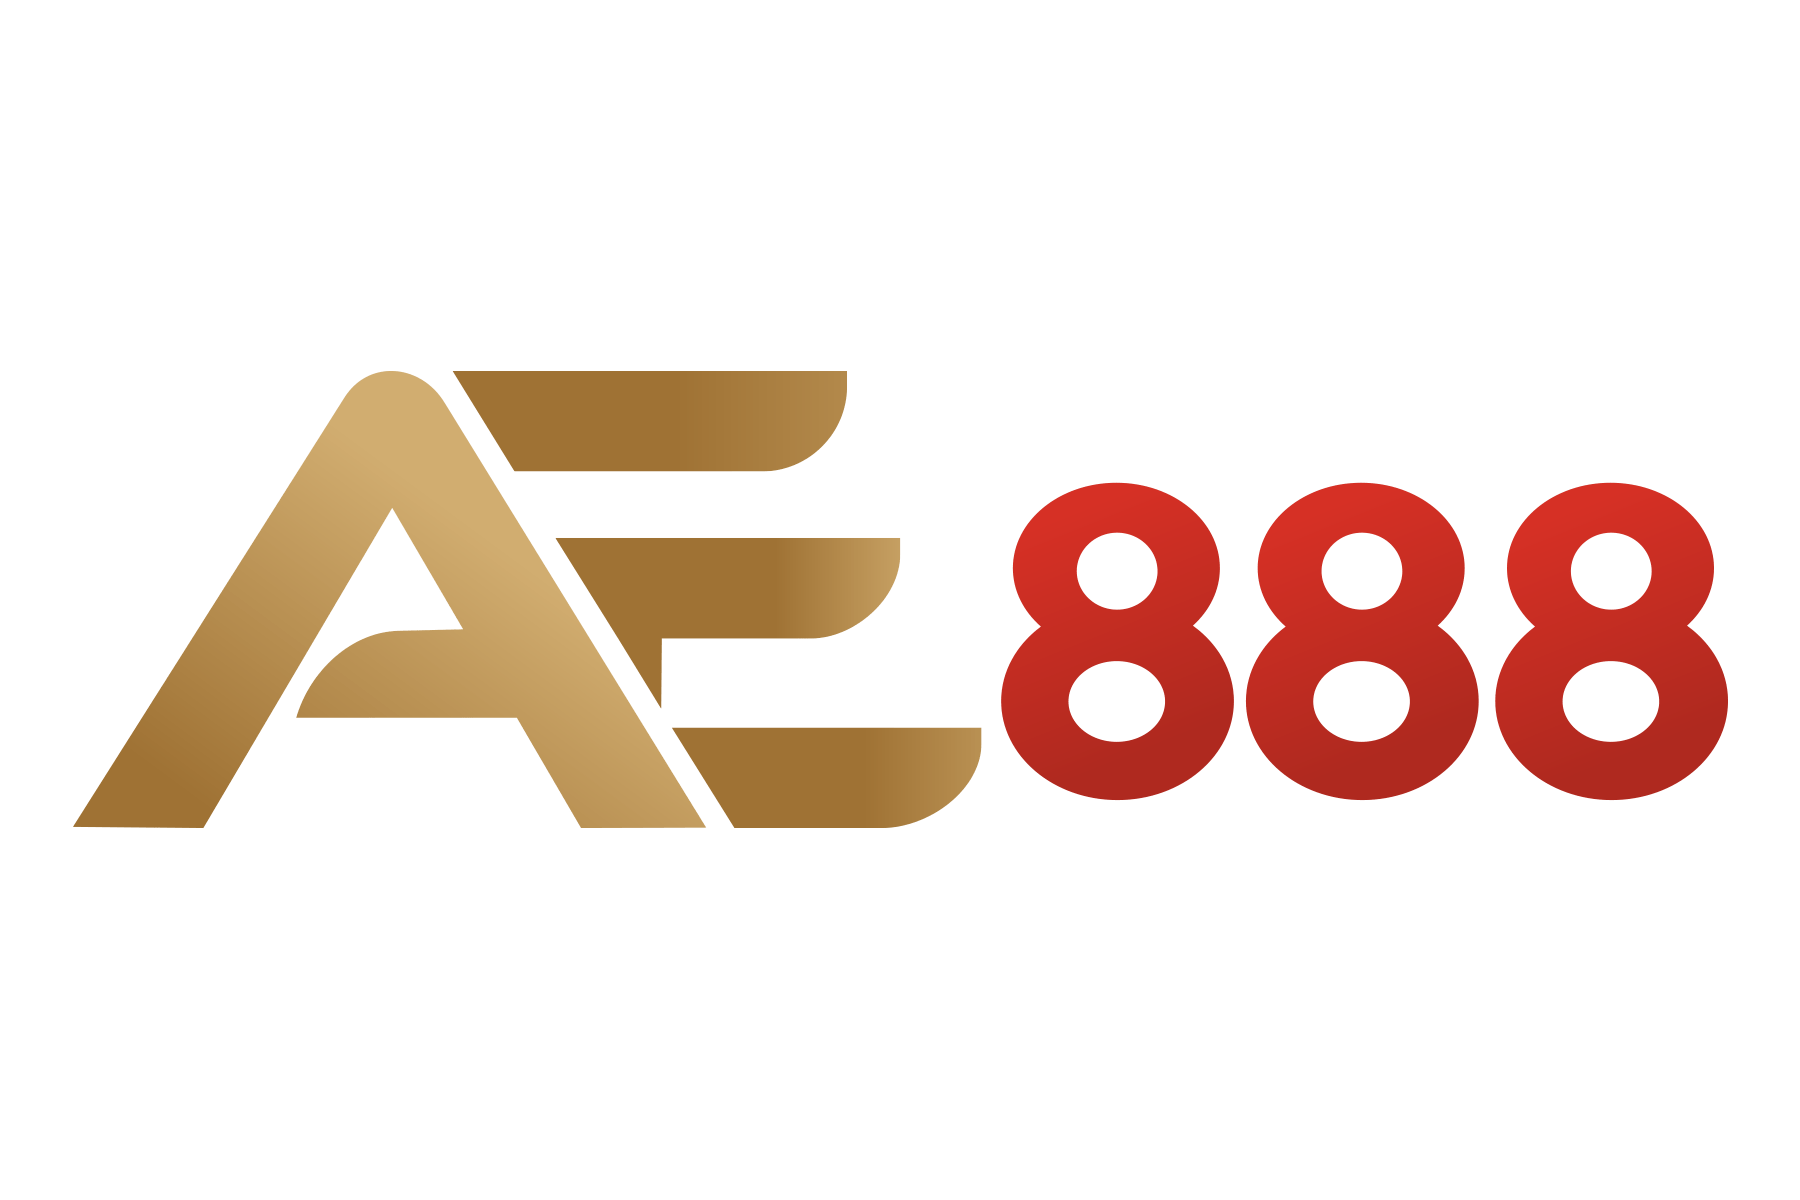 AE888 – Nhà Cái Cá Cược Thế Hệ Mới Nổi Bật Nhất 2022